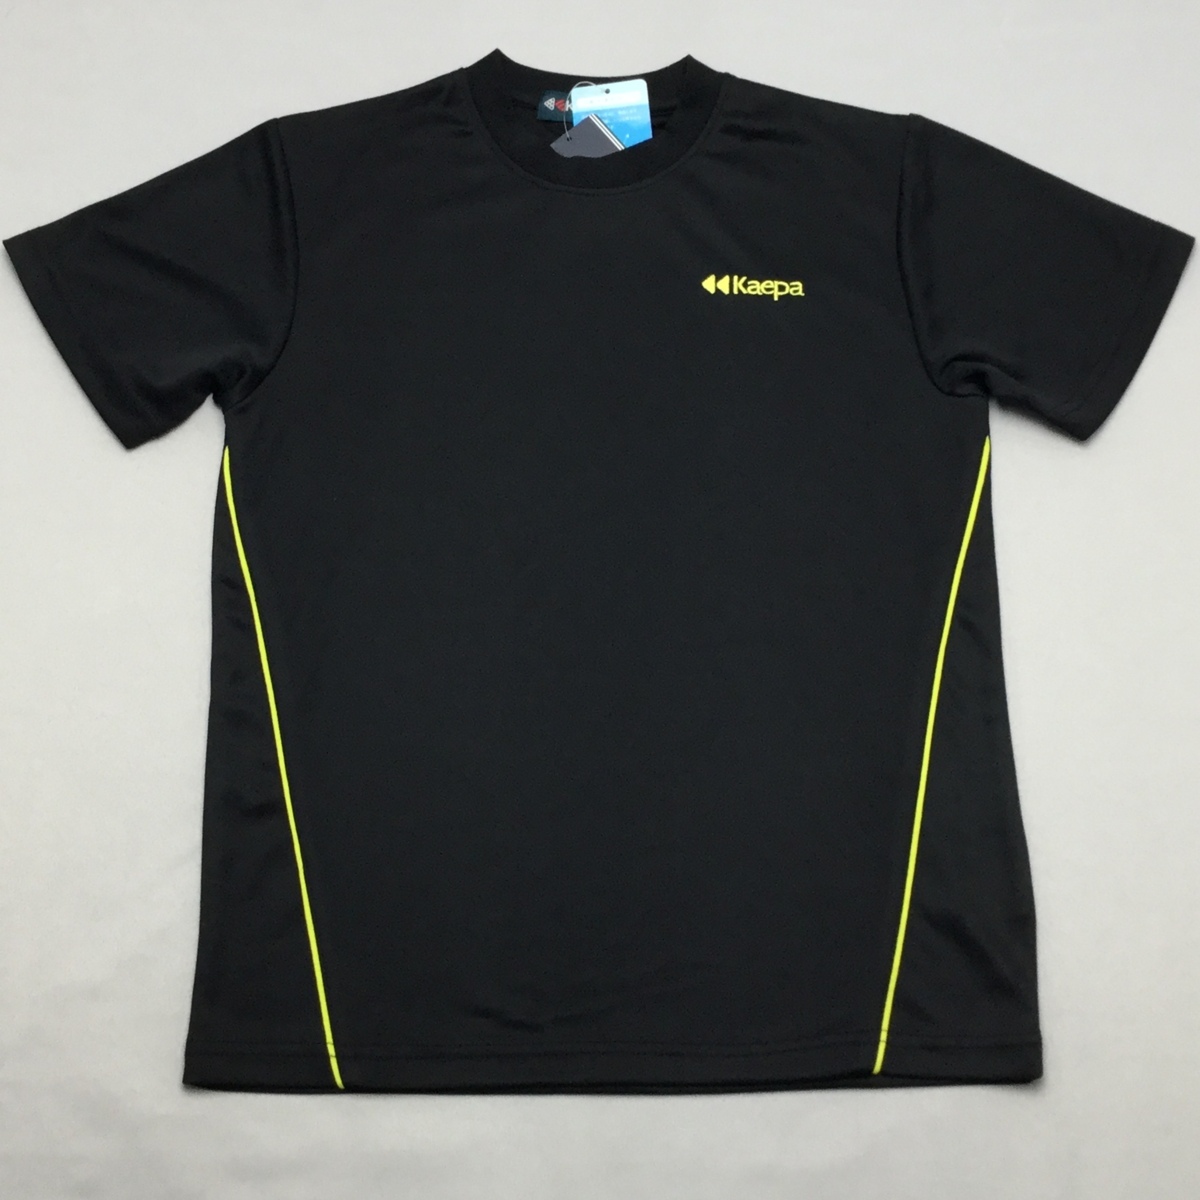 [ бесплатная доставка ][ новый товар ]Kaepa Junior T костюм (. вода скорость . обработка ) 150 черный *112103